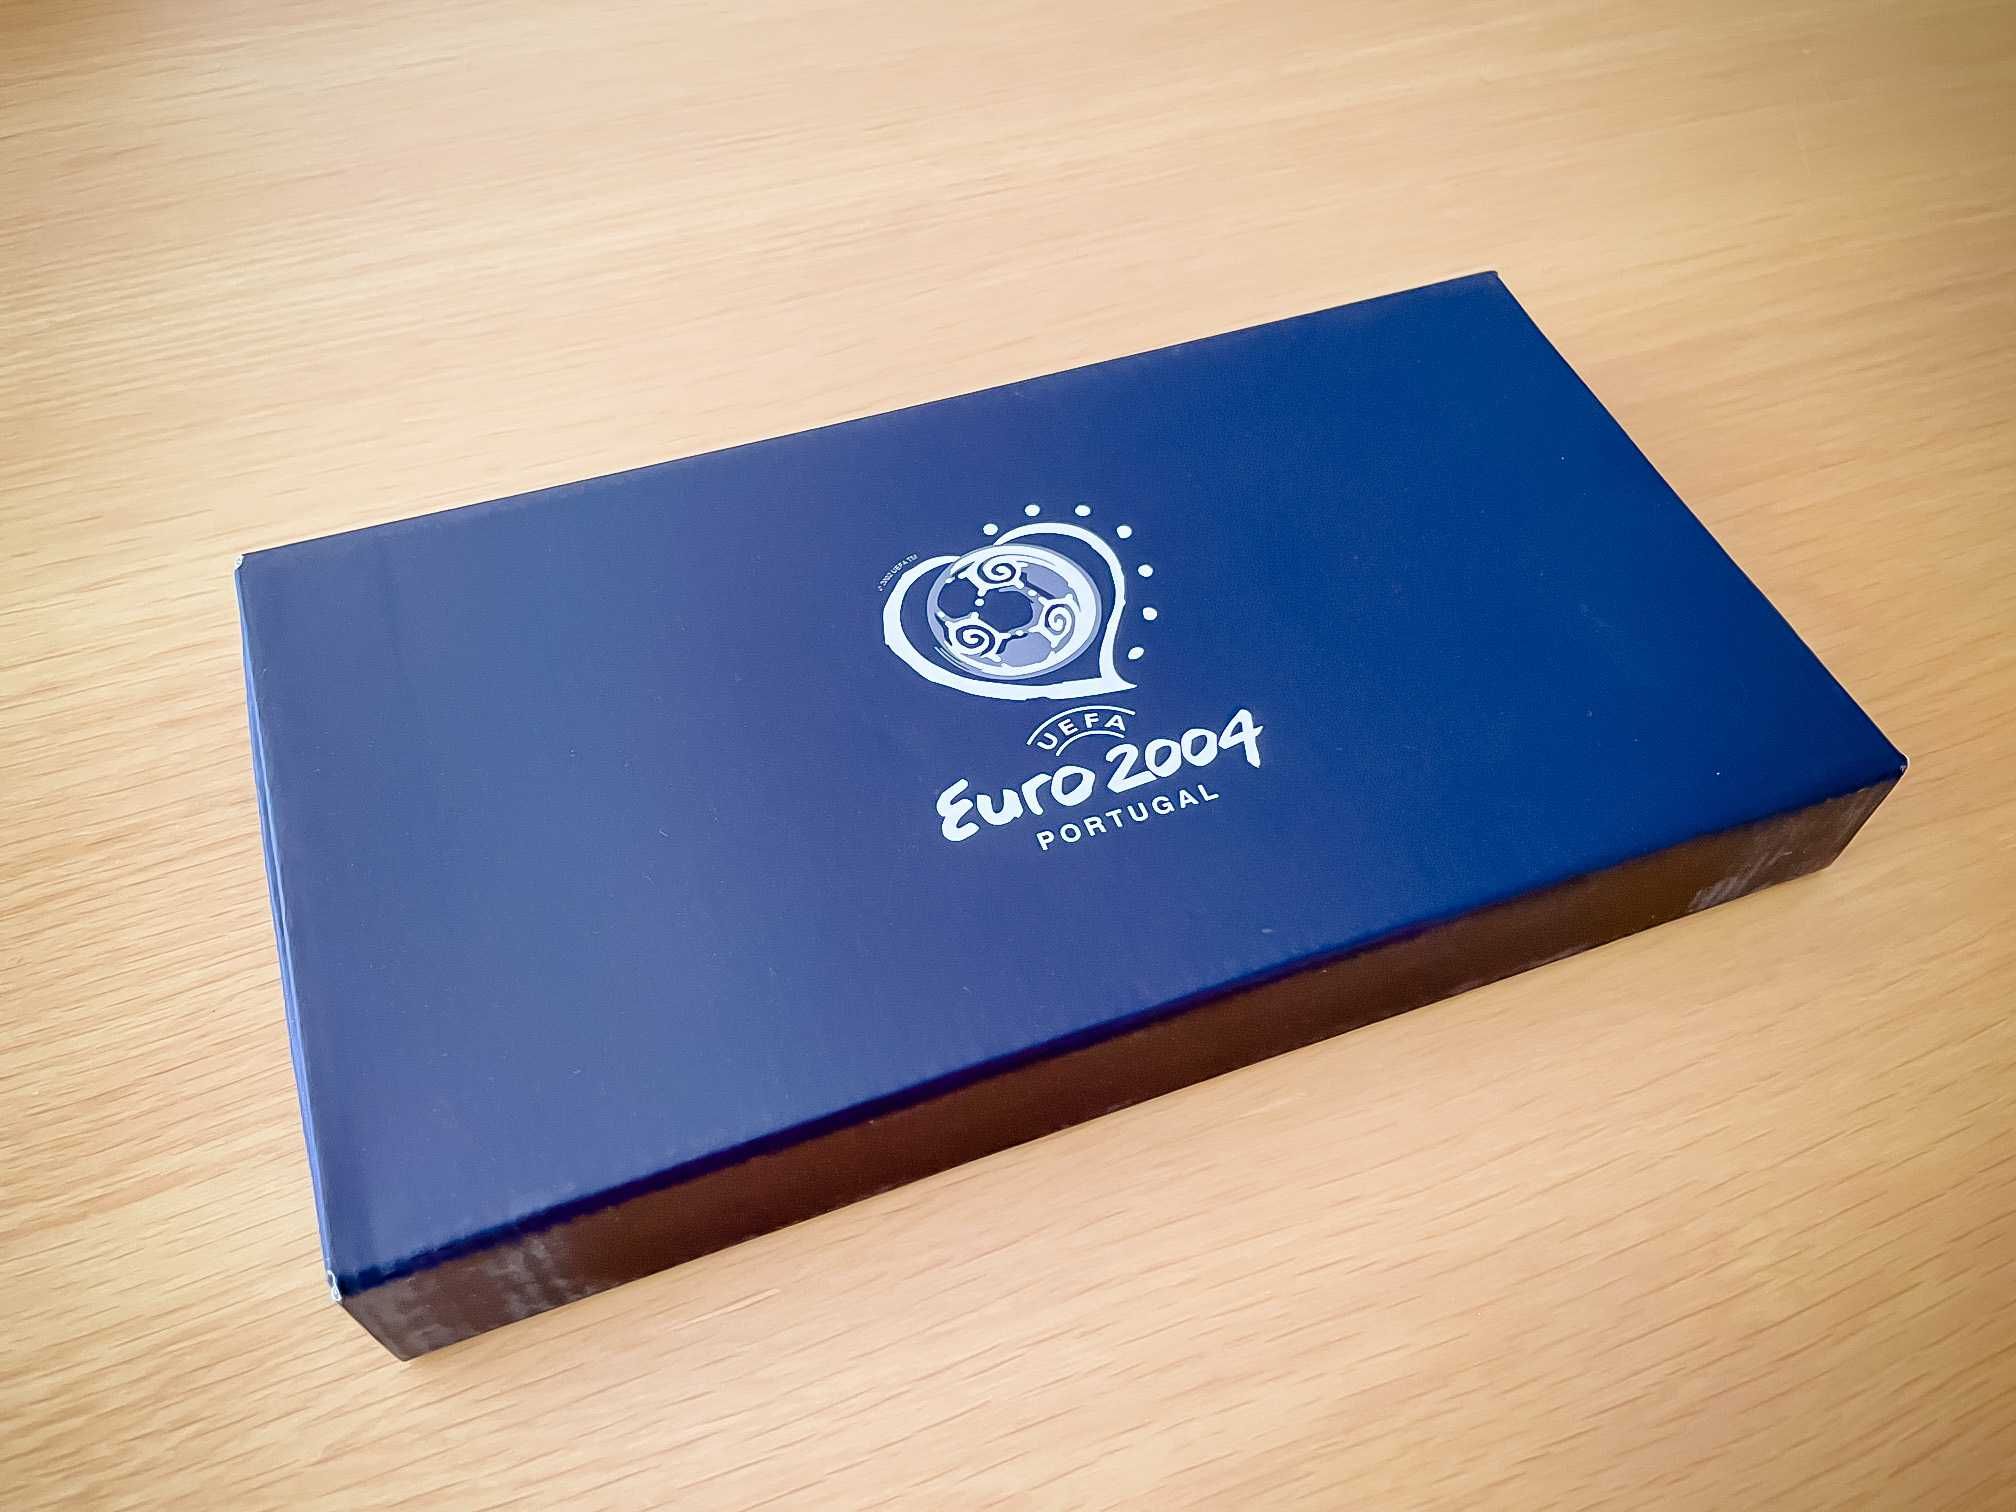 Bilhete da Final do EURO 2004 em acrílico com caixa - coleção